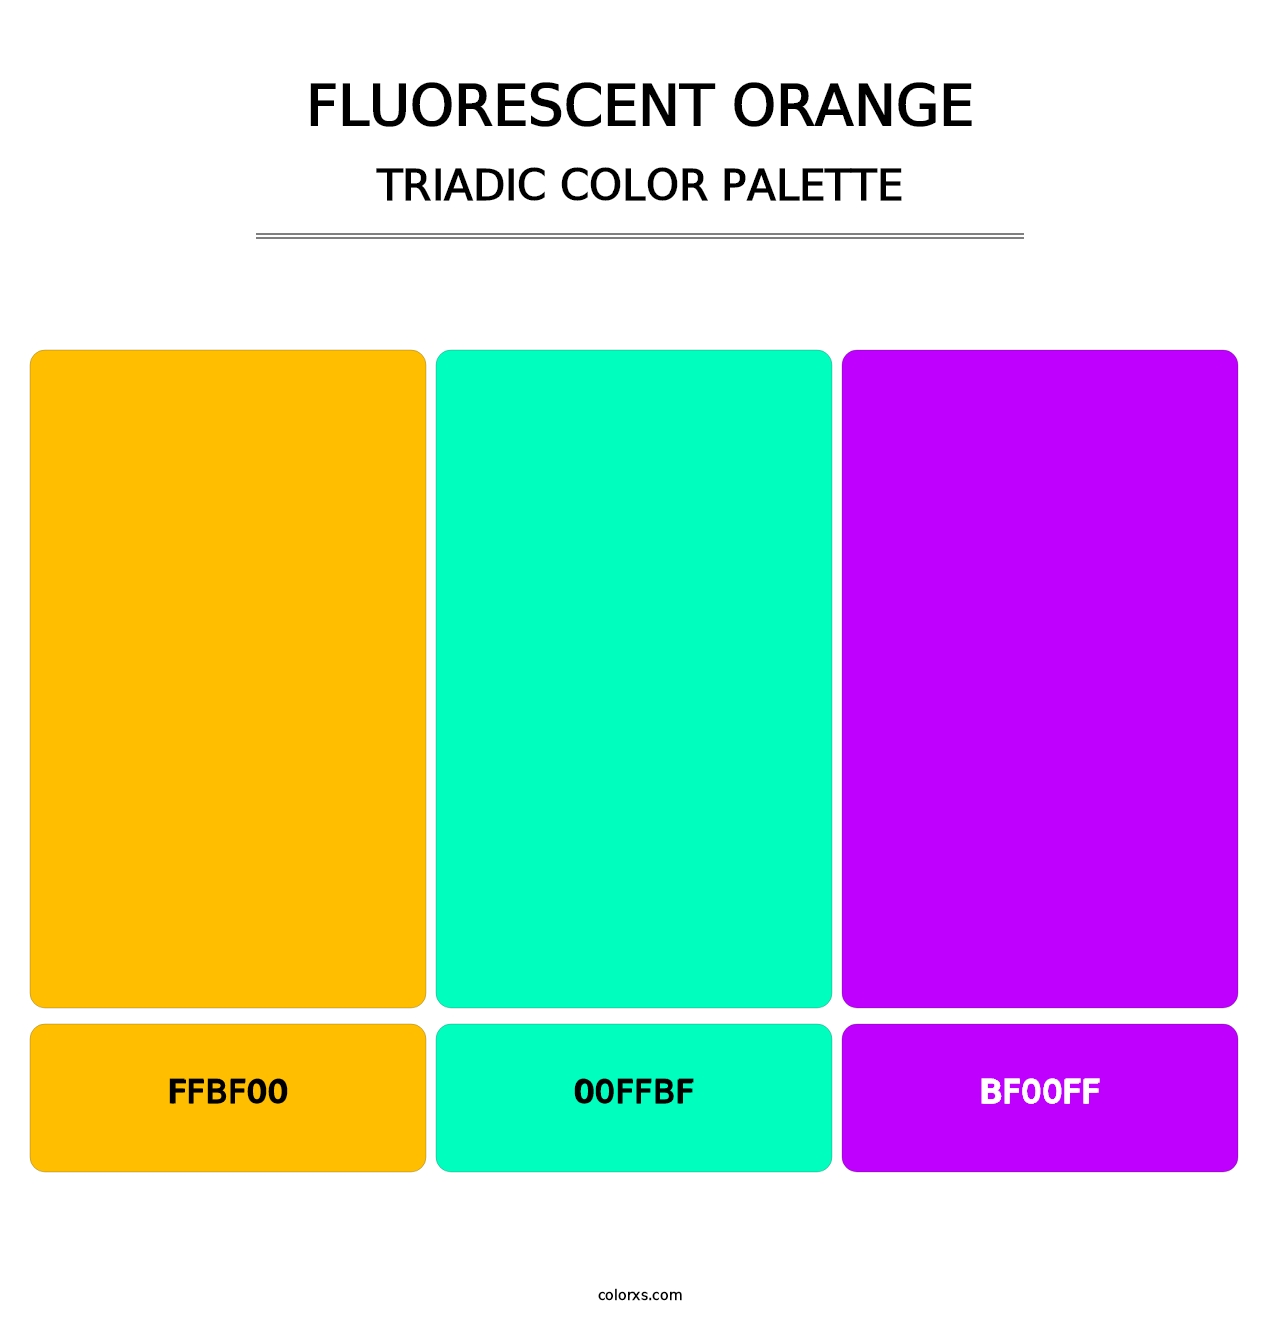 Fluorescent Orange - Triadic Color Palette